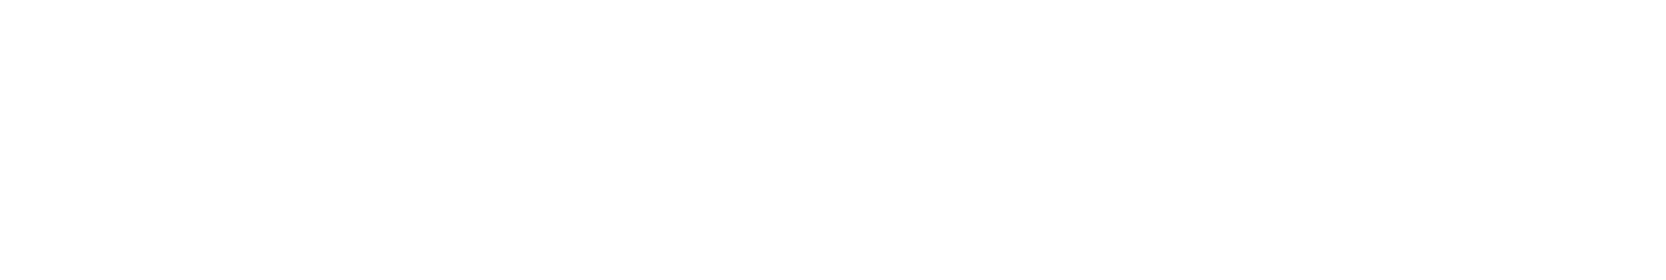 Regions Financial
 logo grand pour les fonds sombres (PNG transparent)